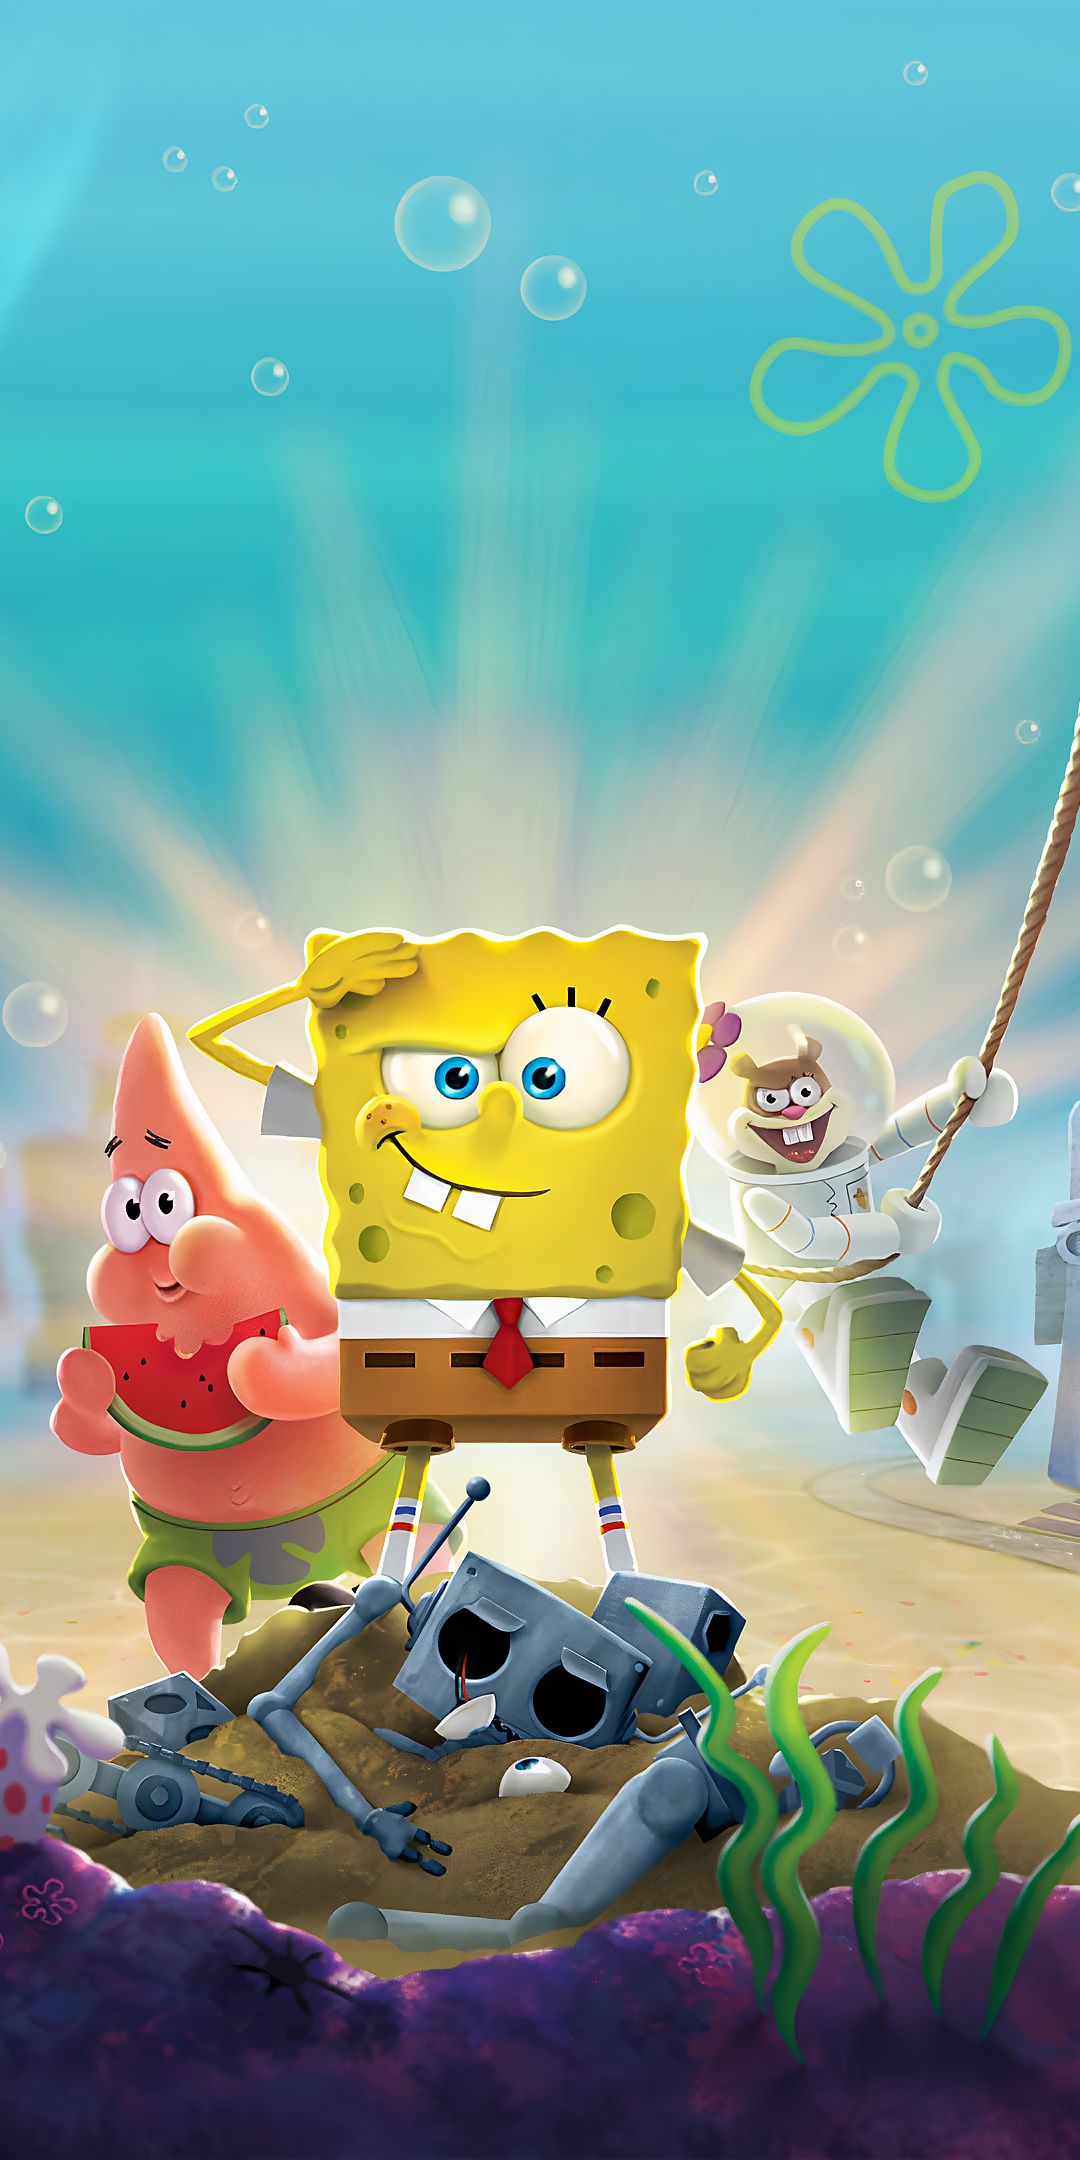 spongebob squarepants and patrick wallpaper